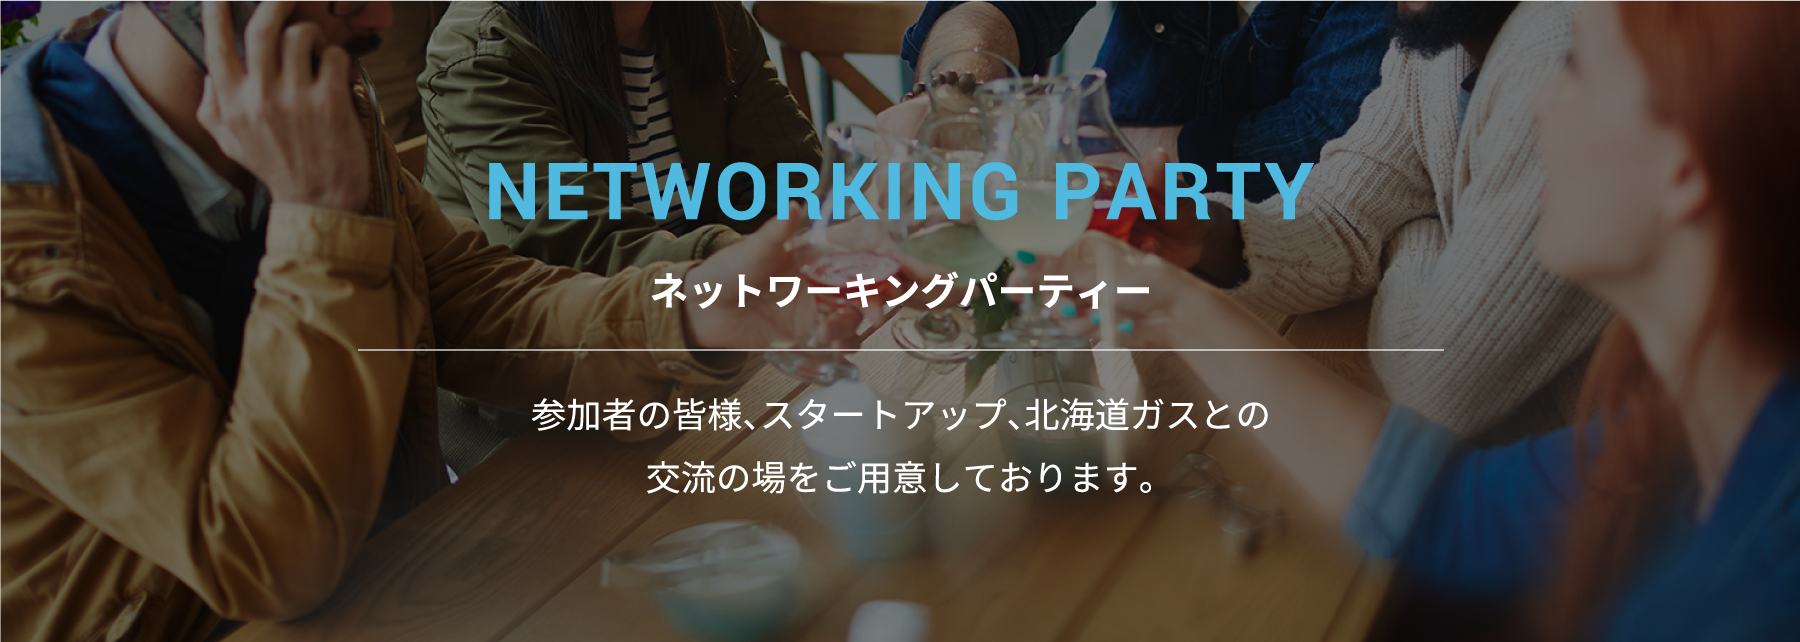 ネットワーキングパーティー 参加者の皆様、スタートアップ、北海道ガスとの交流の場をご用意しております。